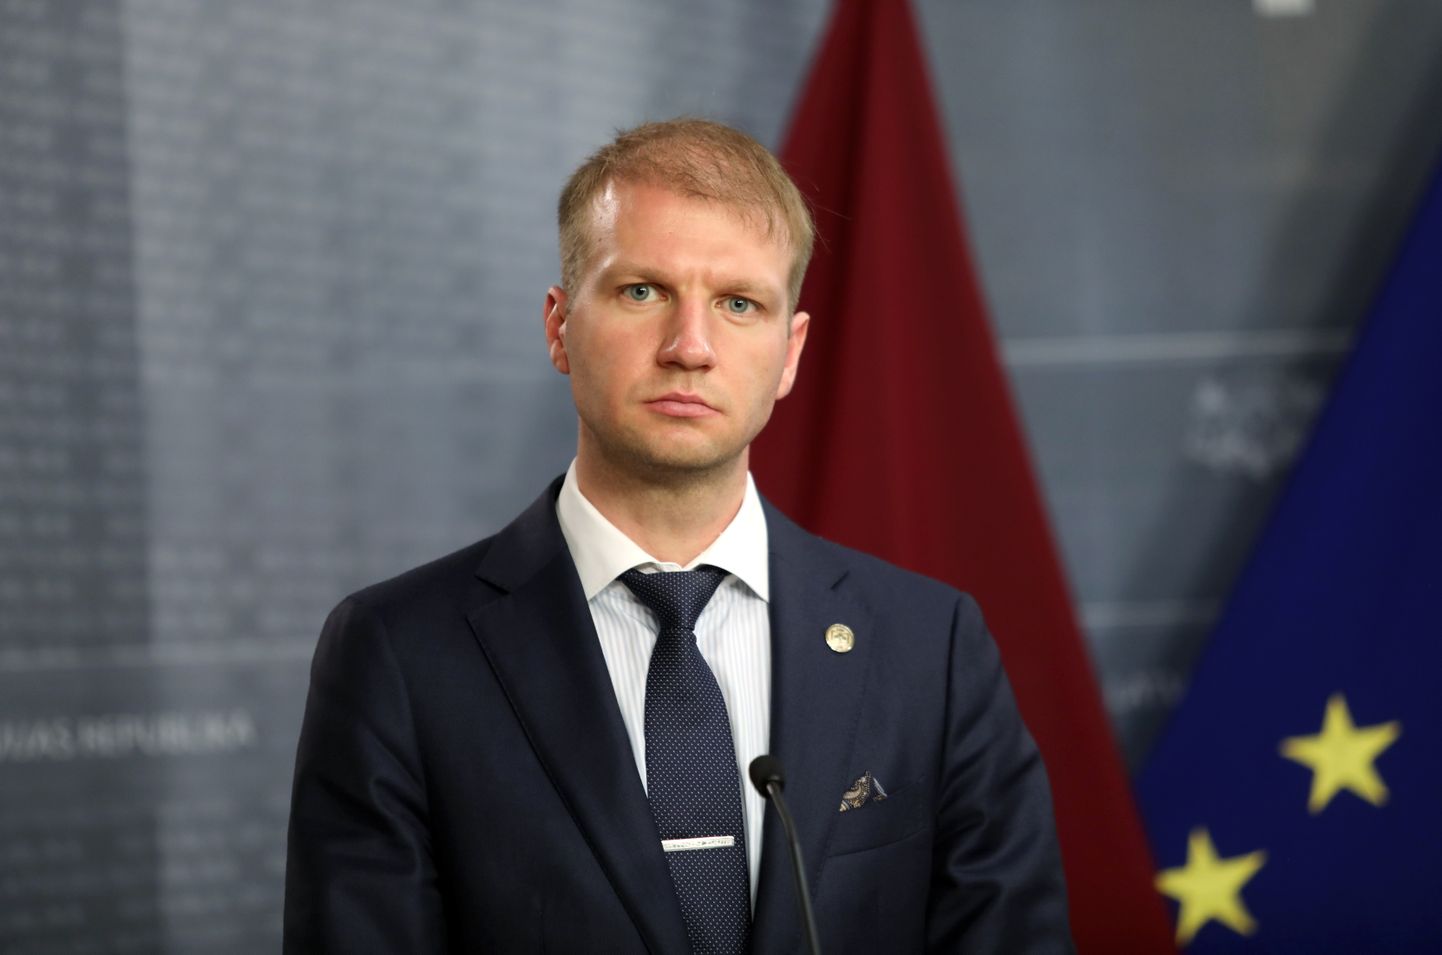 Klimata un enerģētikas ministrs Kaspars Melnis.